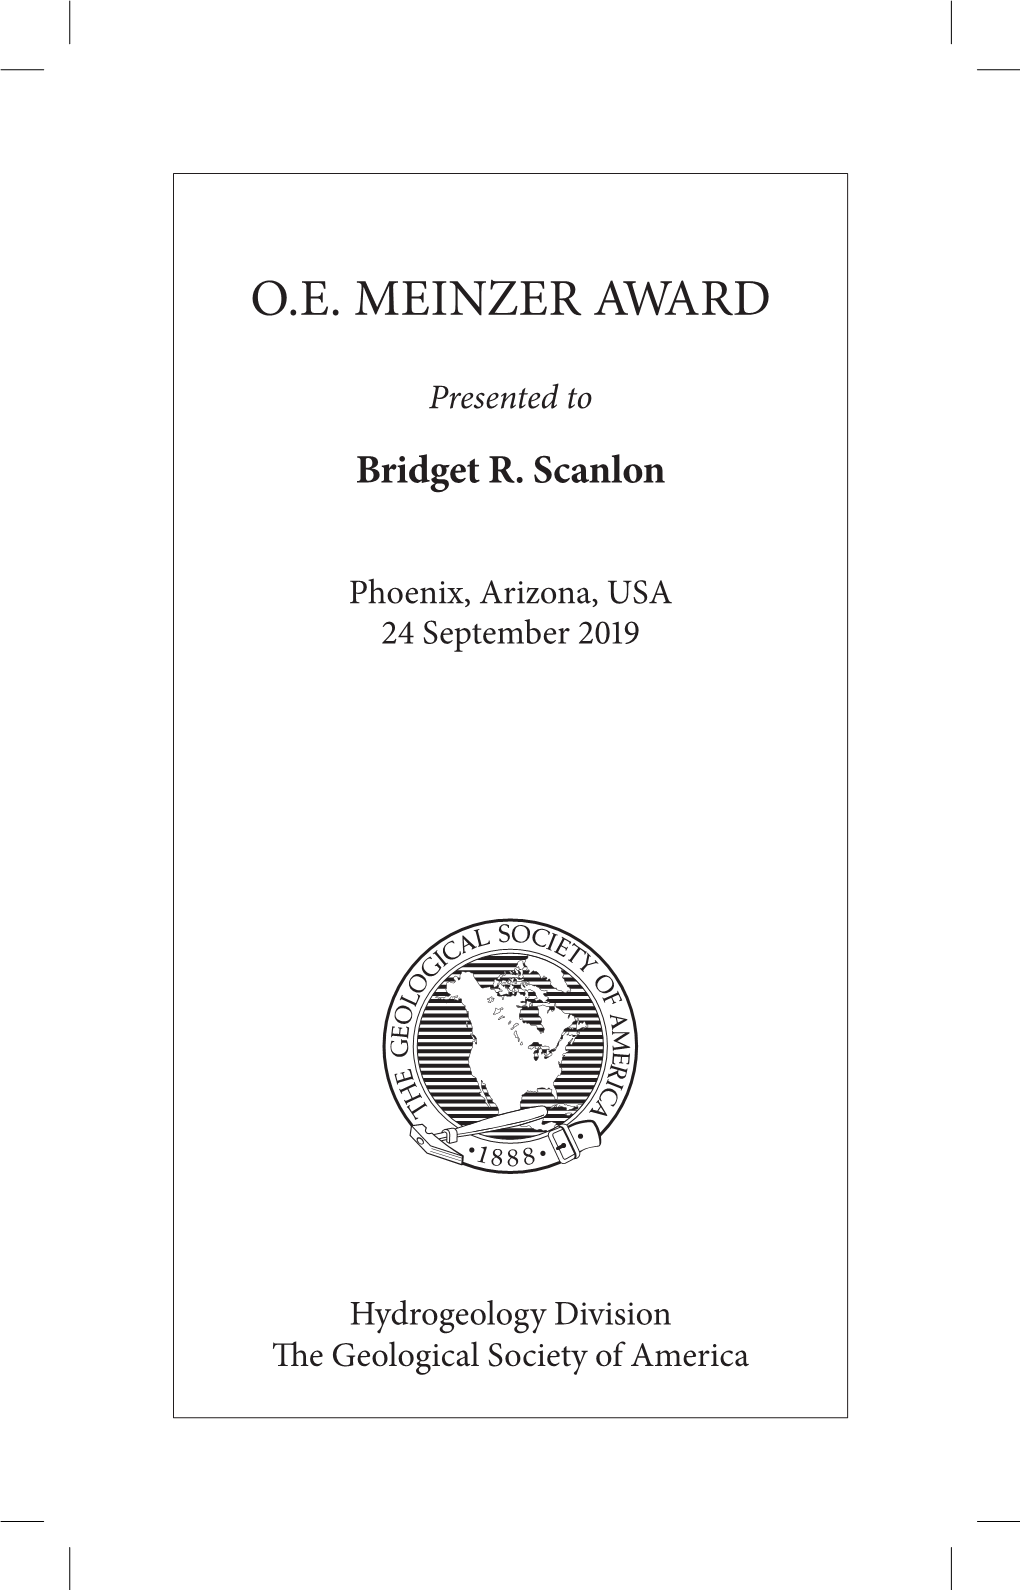 O.E. Meinzer Award